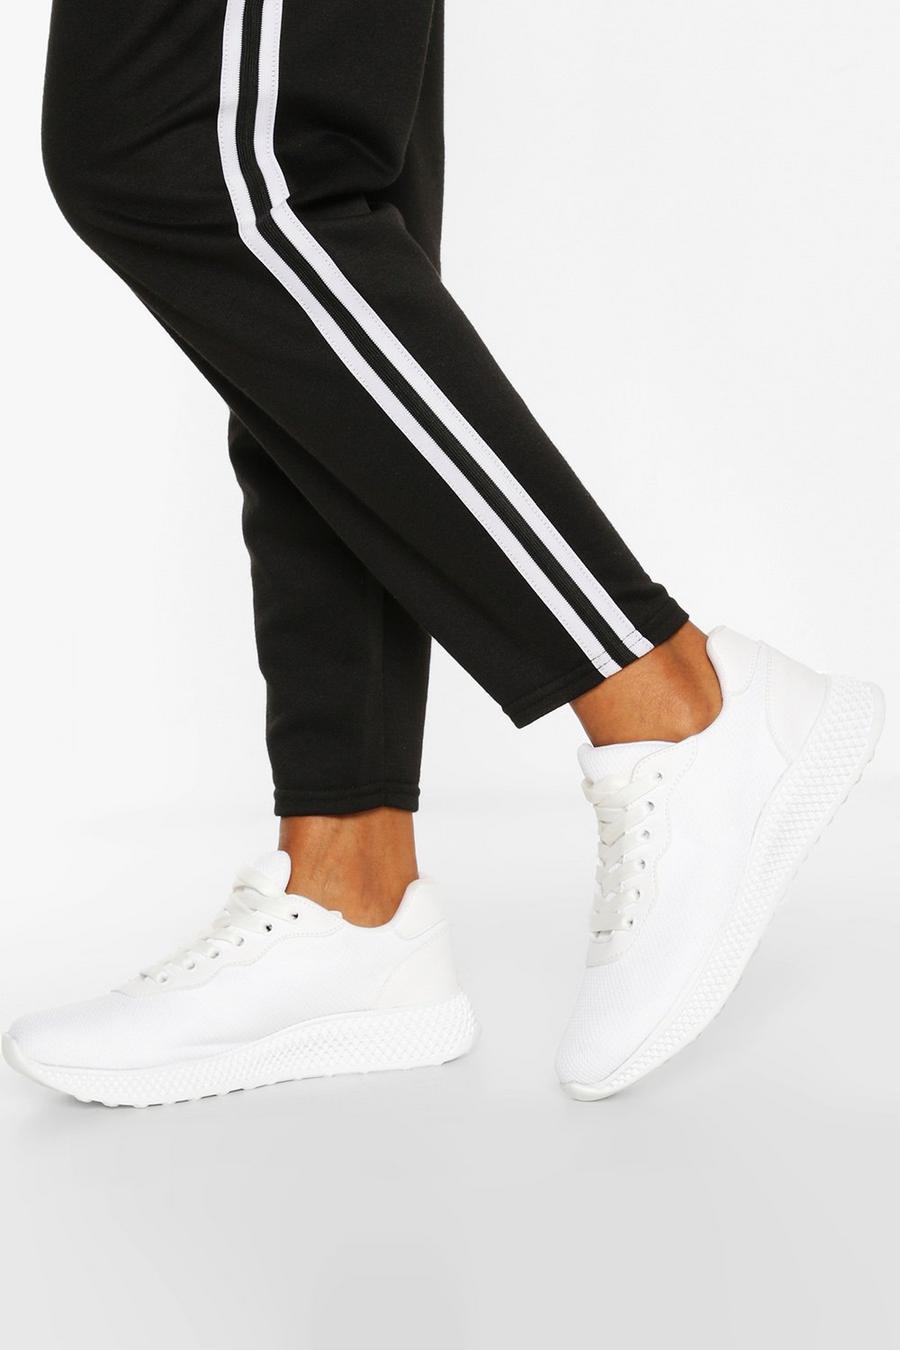 Zapatillas deportivas básicas de correr, Blanco bianco